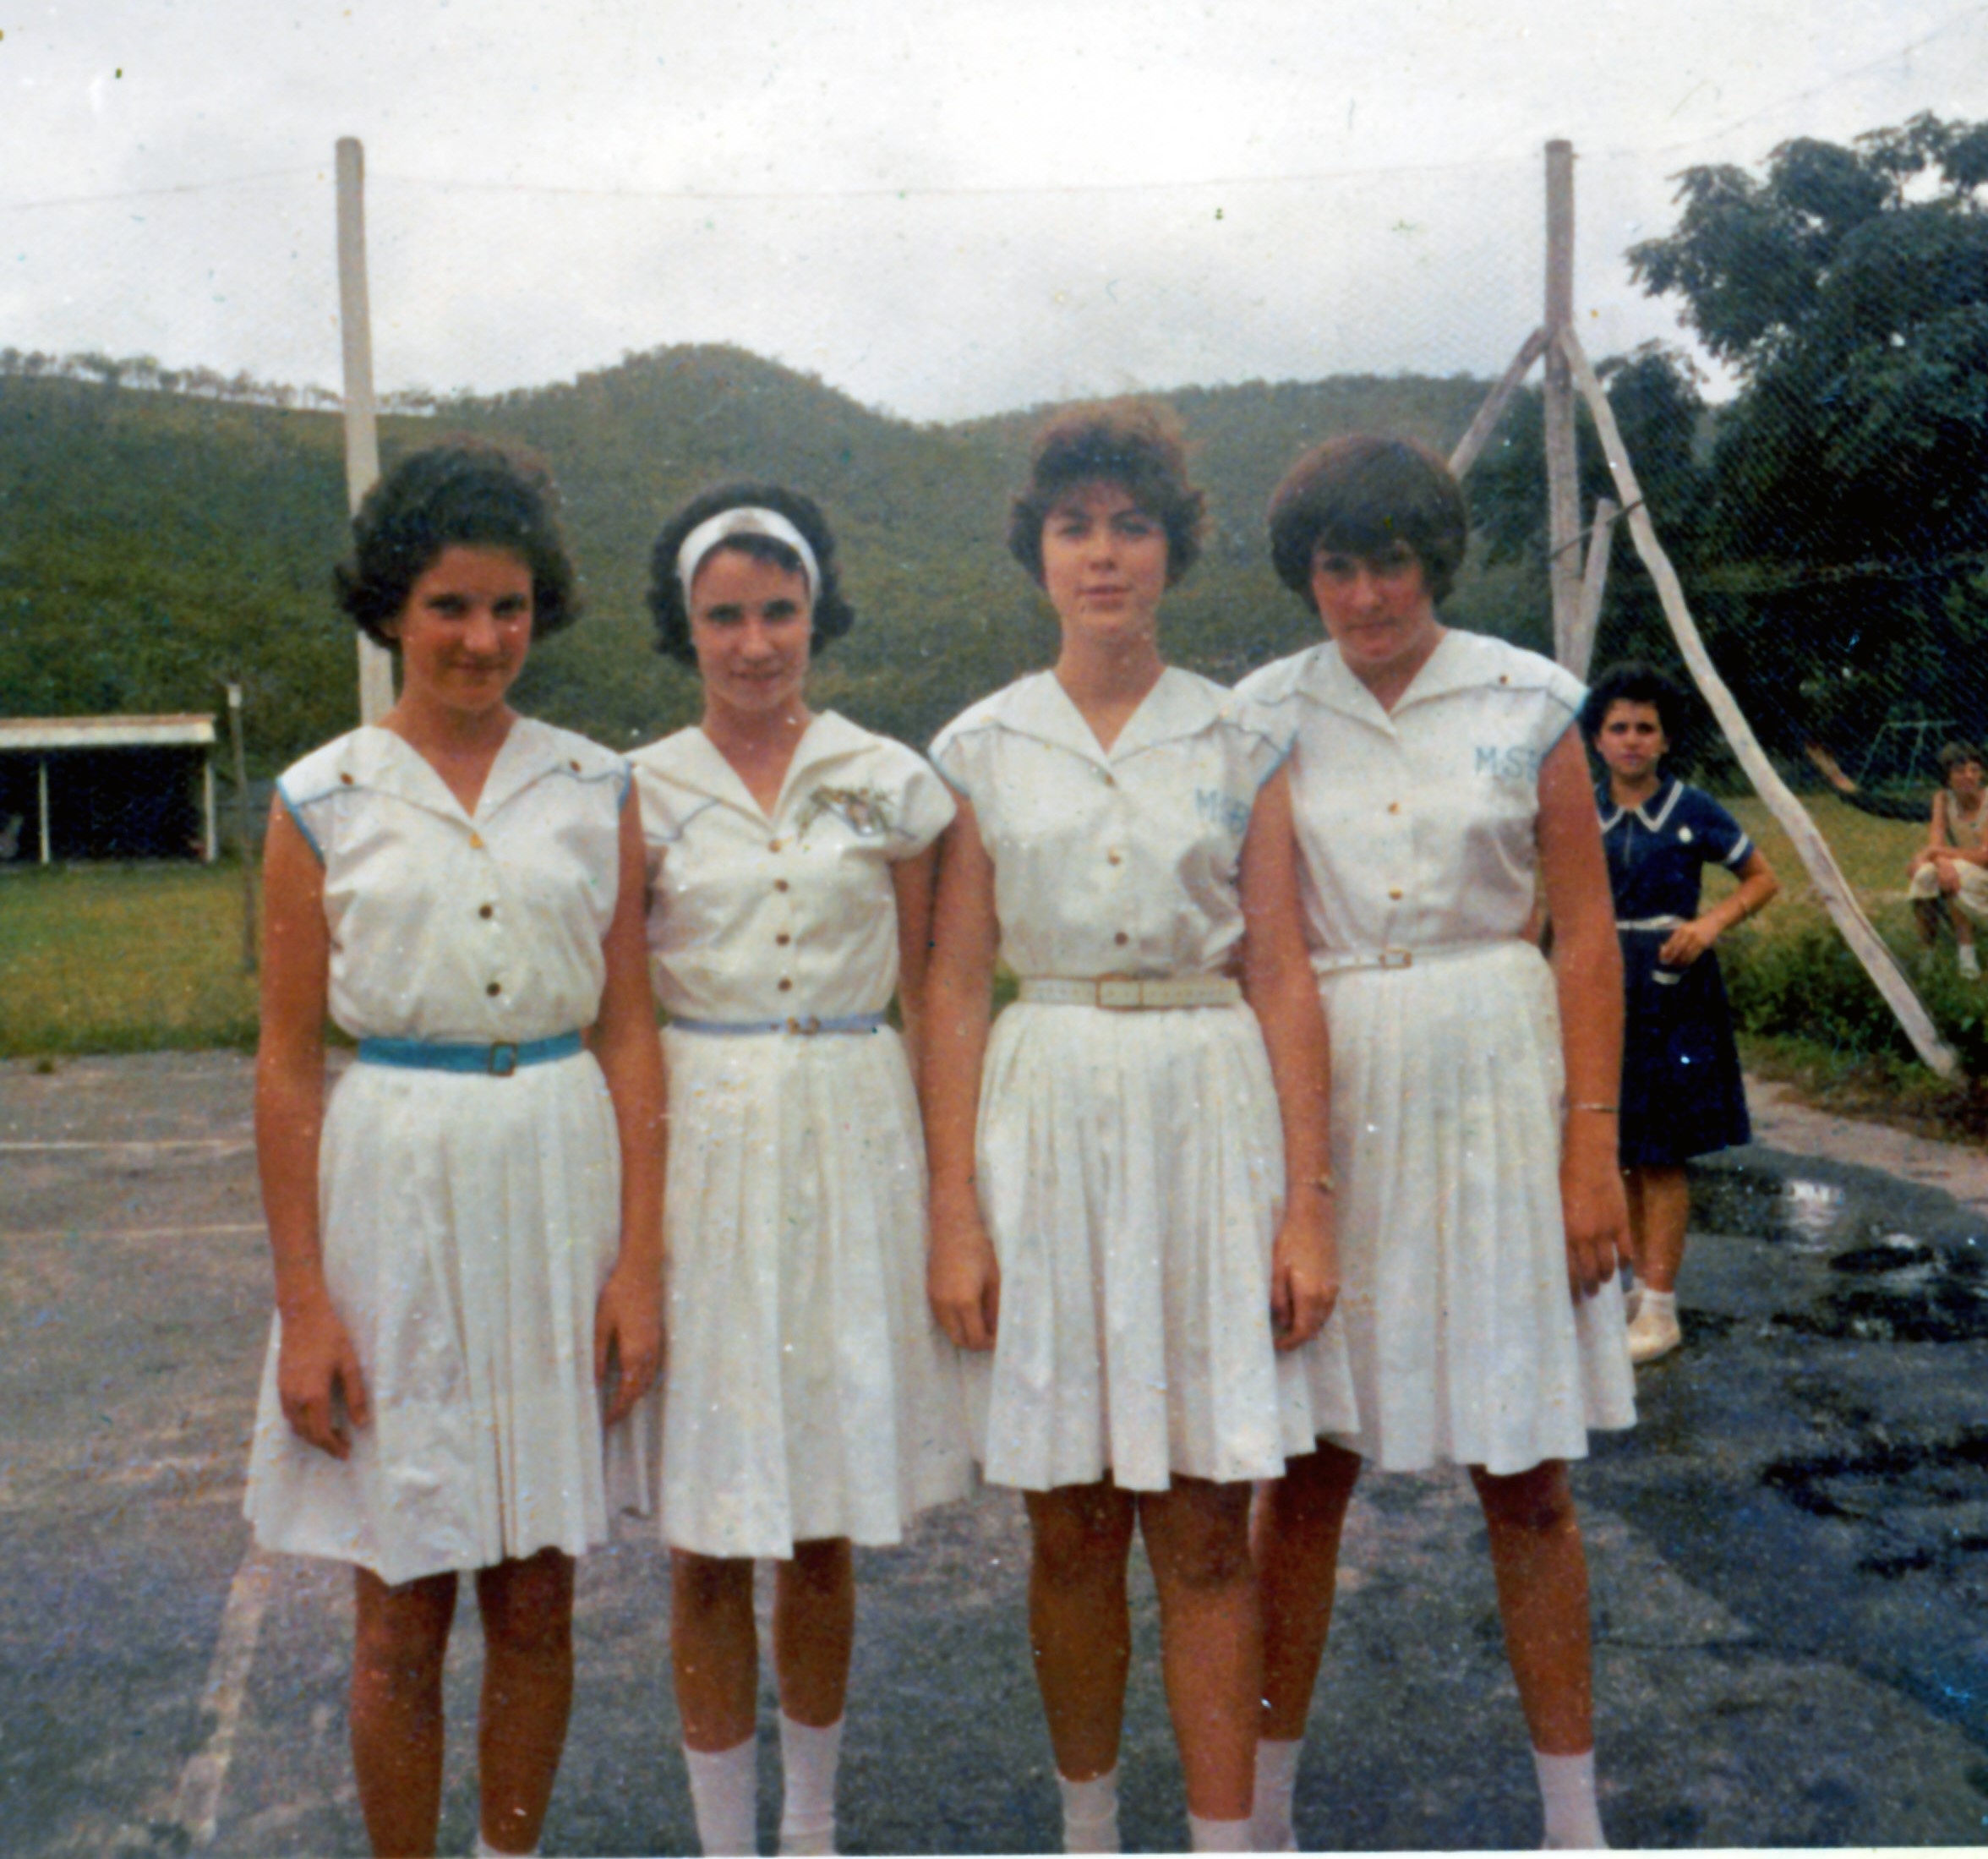 1964 Davis Cup Team Juniors